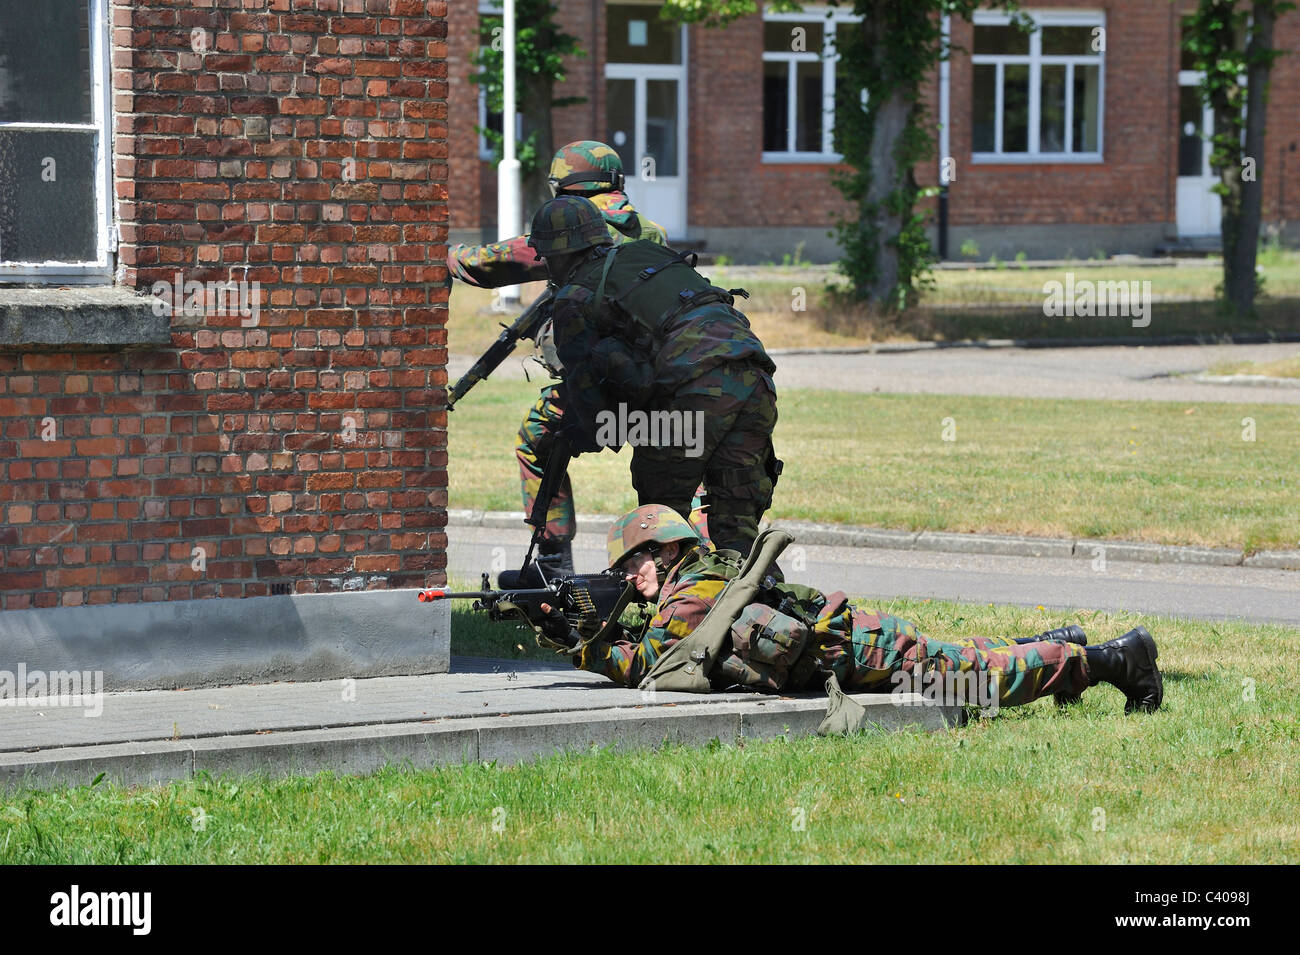 Soldat avec FN Minimi mitrailleuse tirant en street au cours de la démonstration à la journée portes ouvertes de l'armée belge, Leopoldsburg, Belgique Banque D'Images